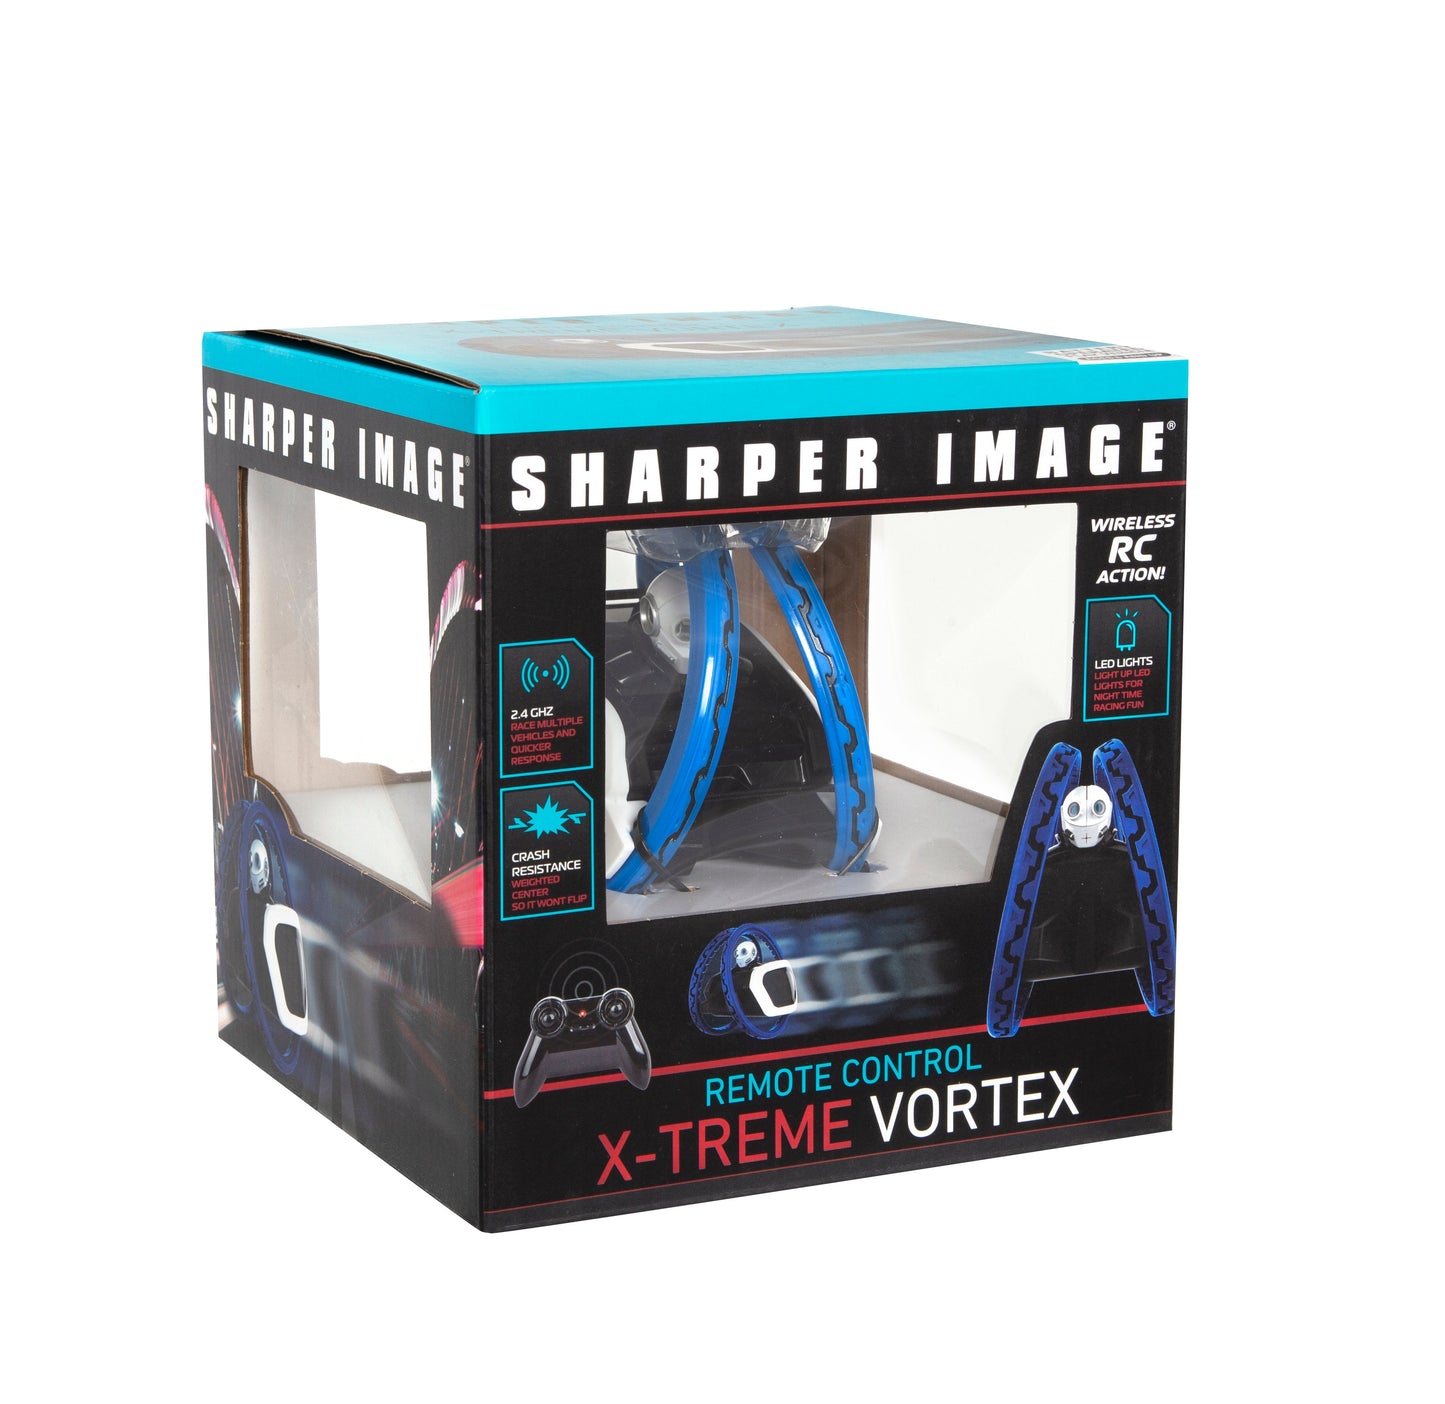 Sharper Image Remote Control X-treme Vortex Toy